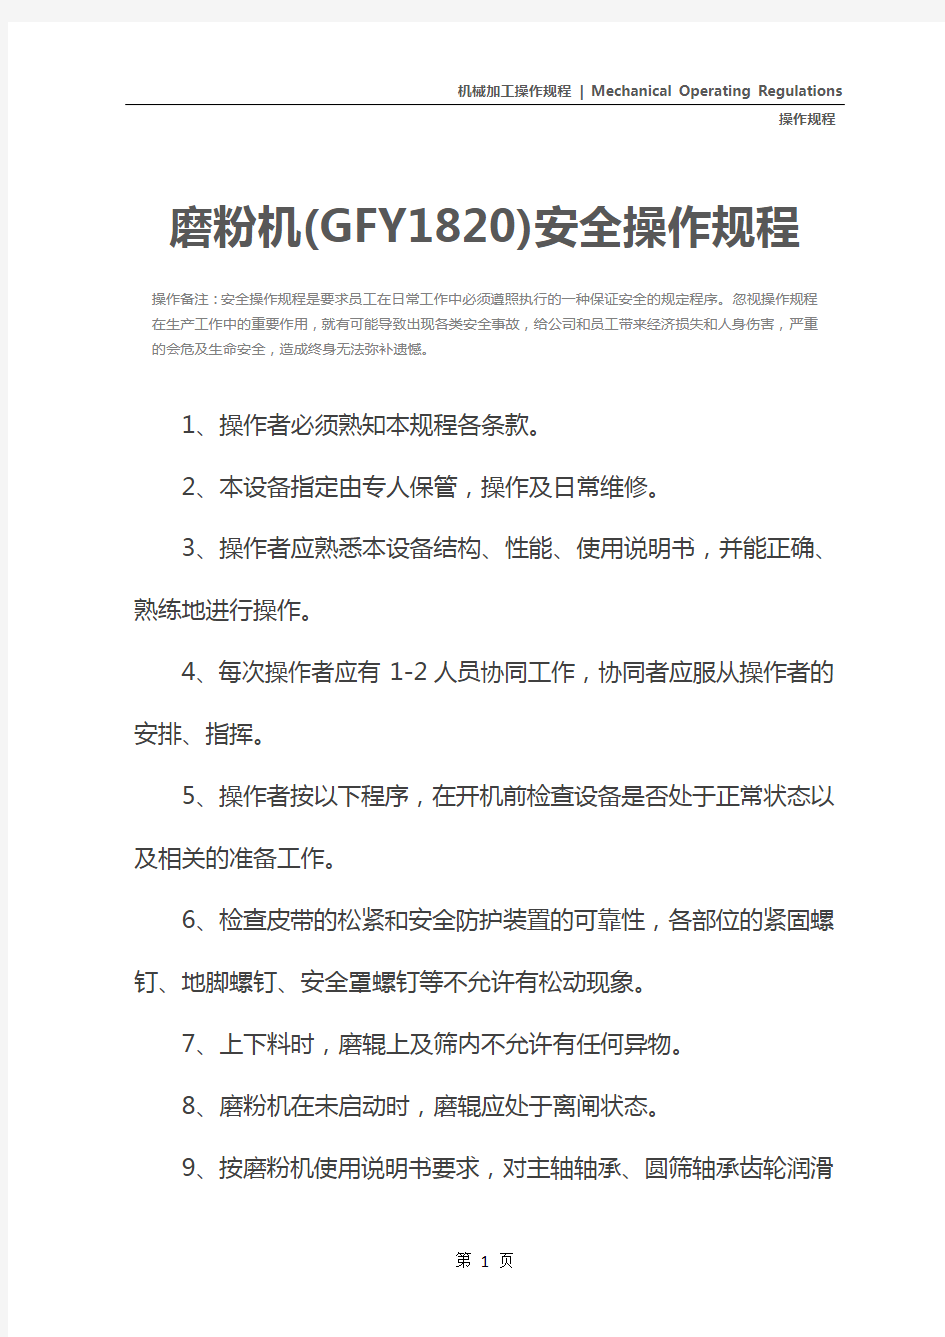 磨粉机(GFY1820)安全操作规程